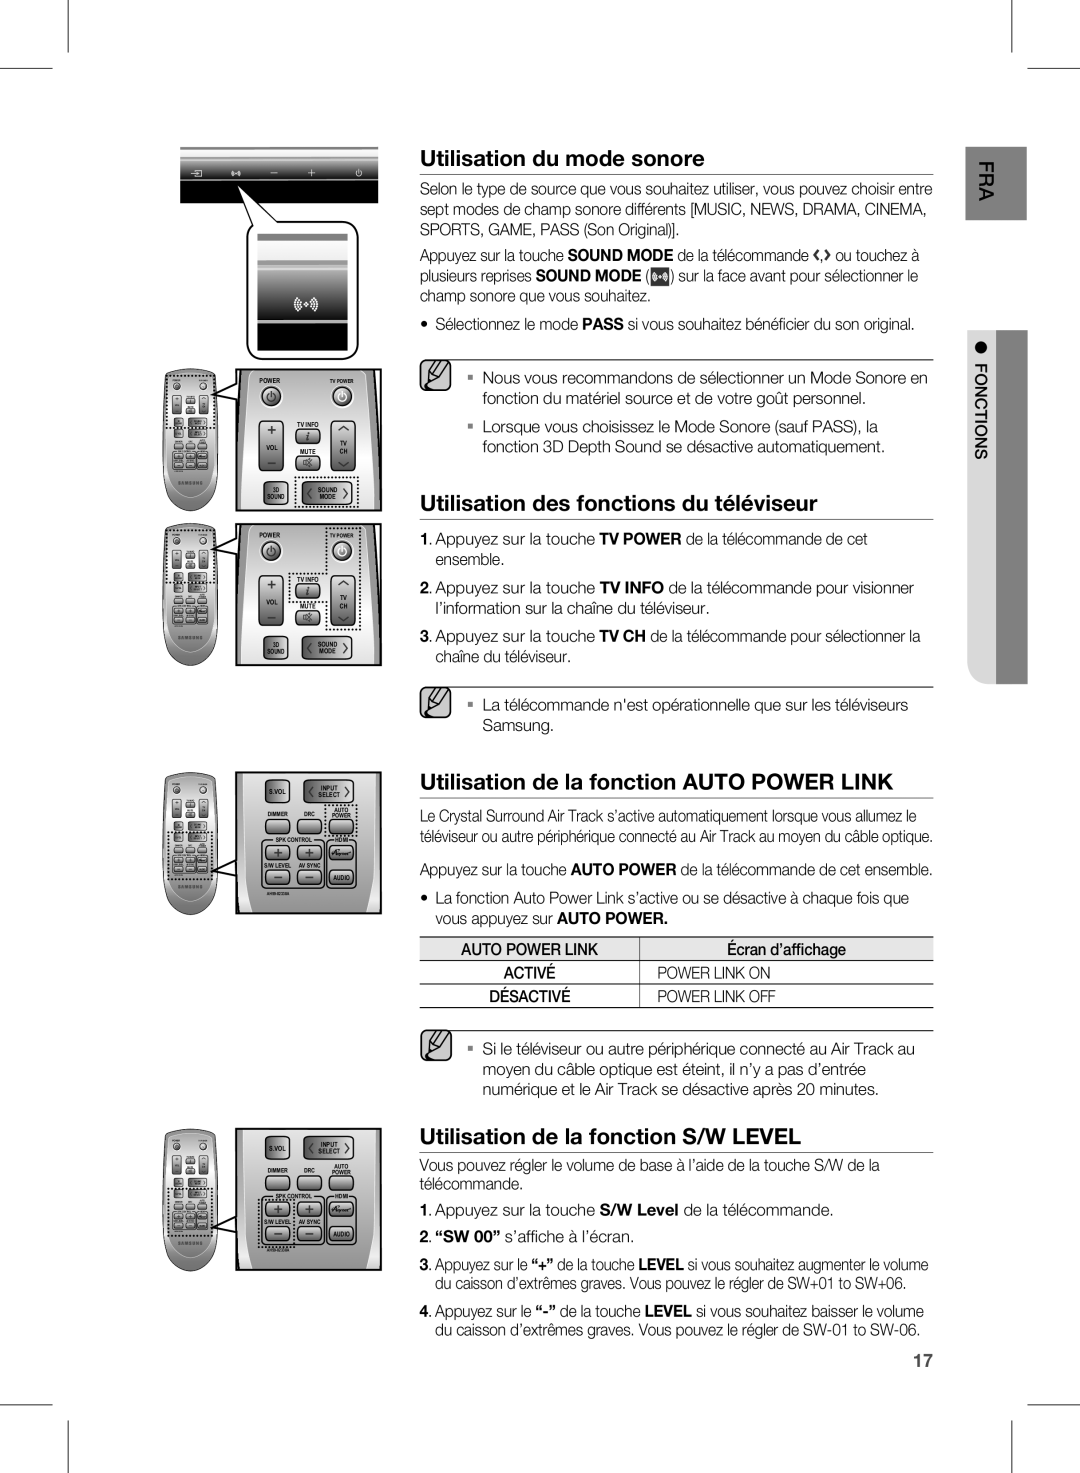 Samsung HW-D451 Utilisation du mode sonore, Utilisation des fonctions du téléviseur, Utilisation de la fonction S/W LEVEL 